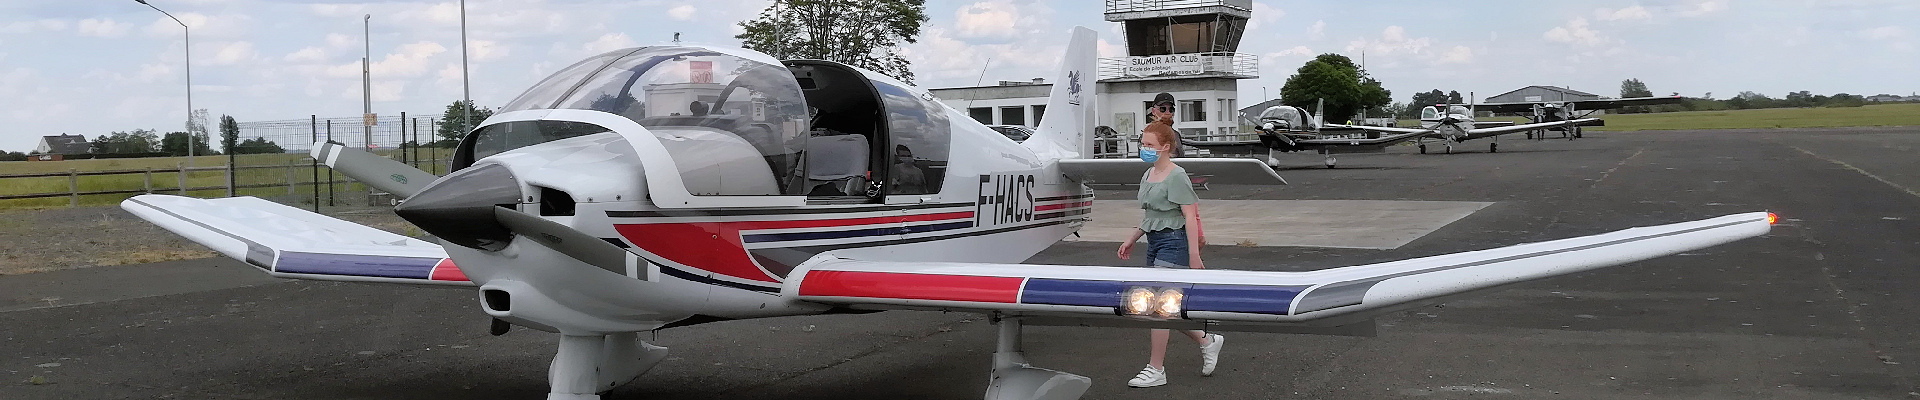 École de pilotage pour apprendre à, piloter un avion dans un aéro-club avec Saumur Air Club